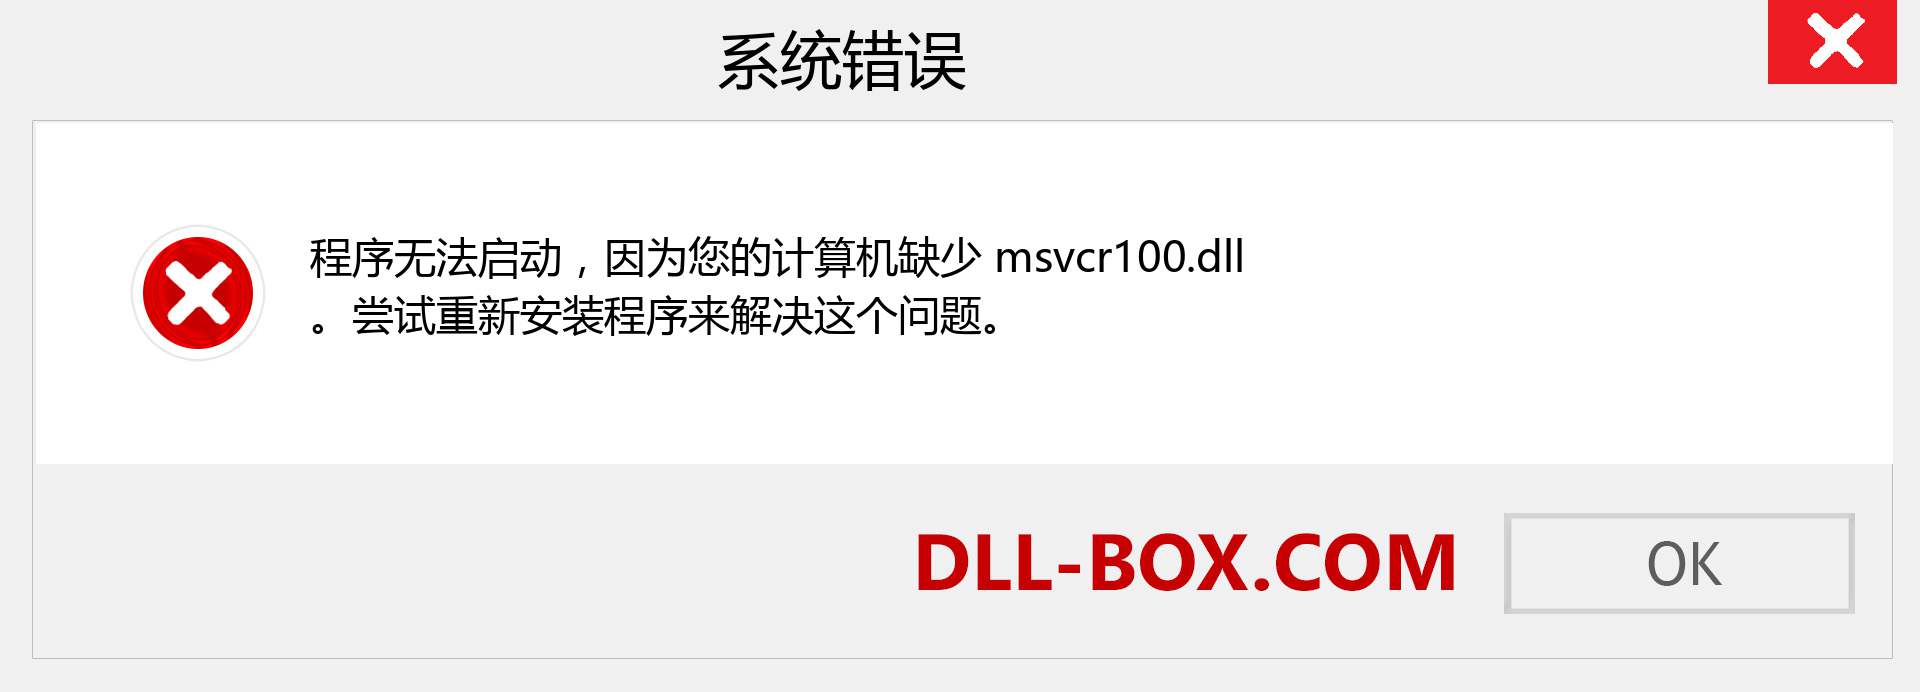 msvcr100.dll 文件丢失？。 适用于 Windows 7、8、10 的下载 - 修复 Windows、照片、图像上的 msvcr100 dll 丢失错误